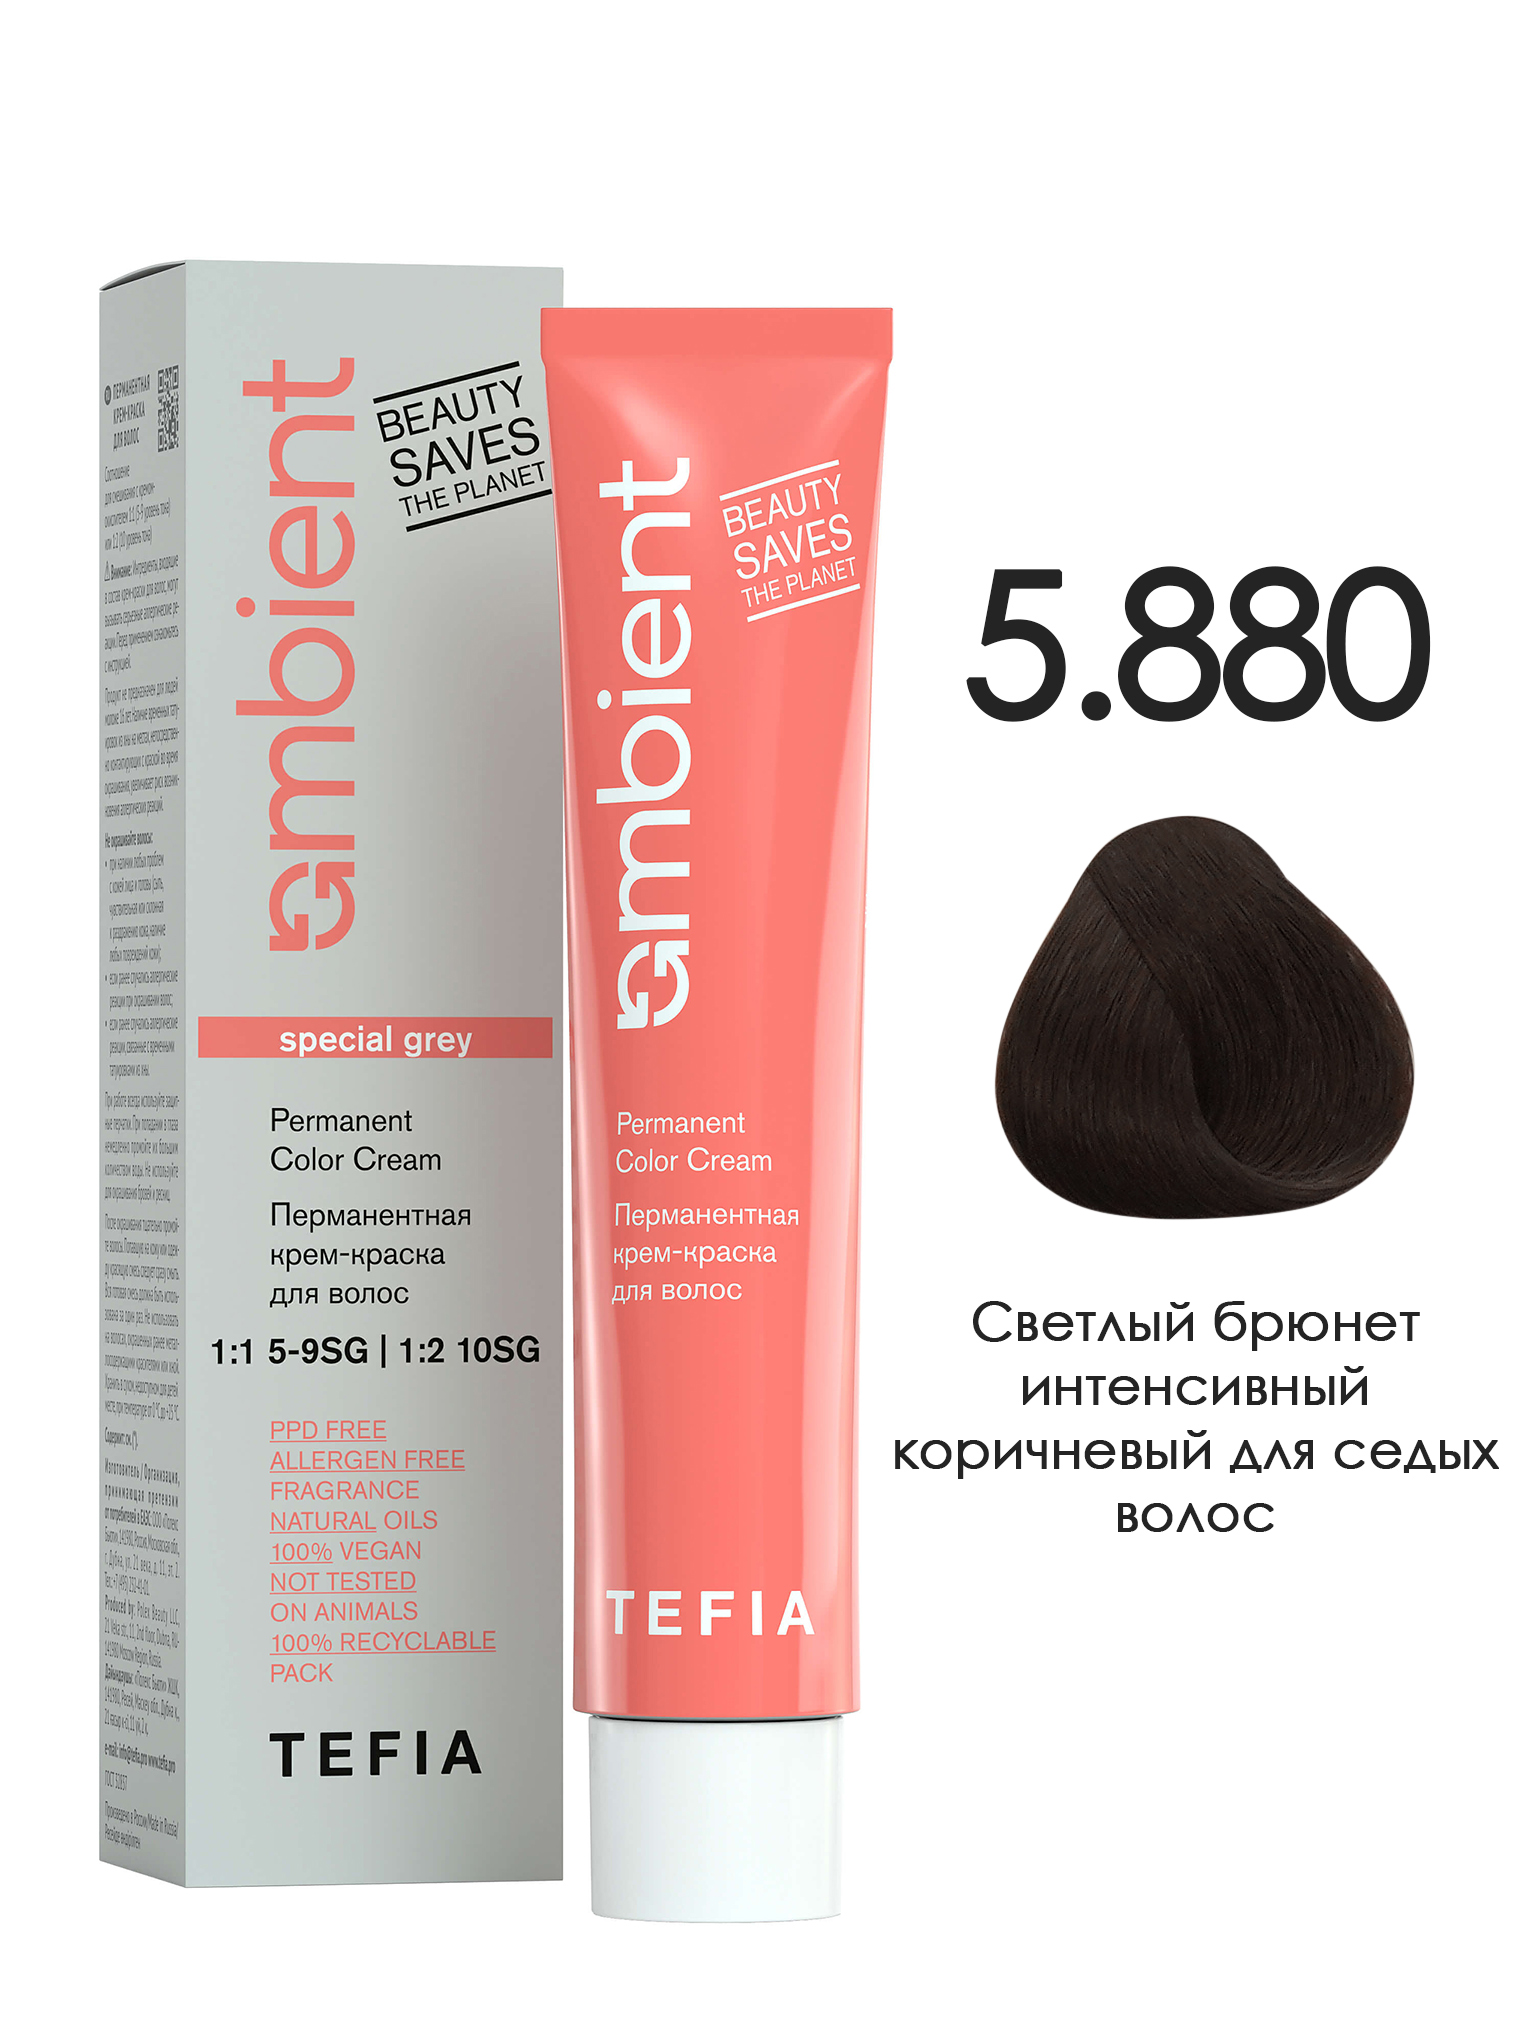 Краска TEFIA AMBIENT 5.880 Светлый брюнет интенсивный коричневый для седых волос 60 мл крем интенсивный для увлажнения волос iau cell care 3м 500 мл